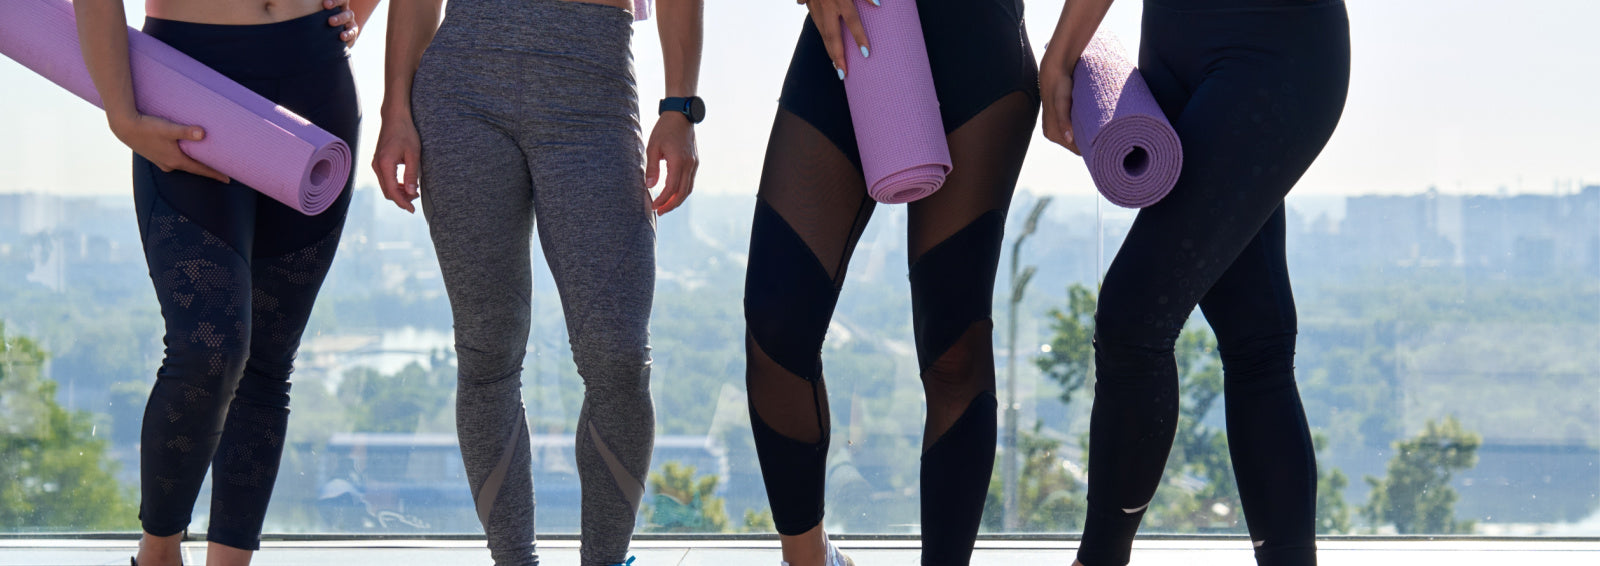 Solaire Women's Black Athletic Compression Workout Gym Yoga Capris Pants  Shorts